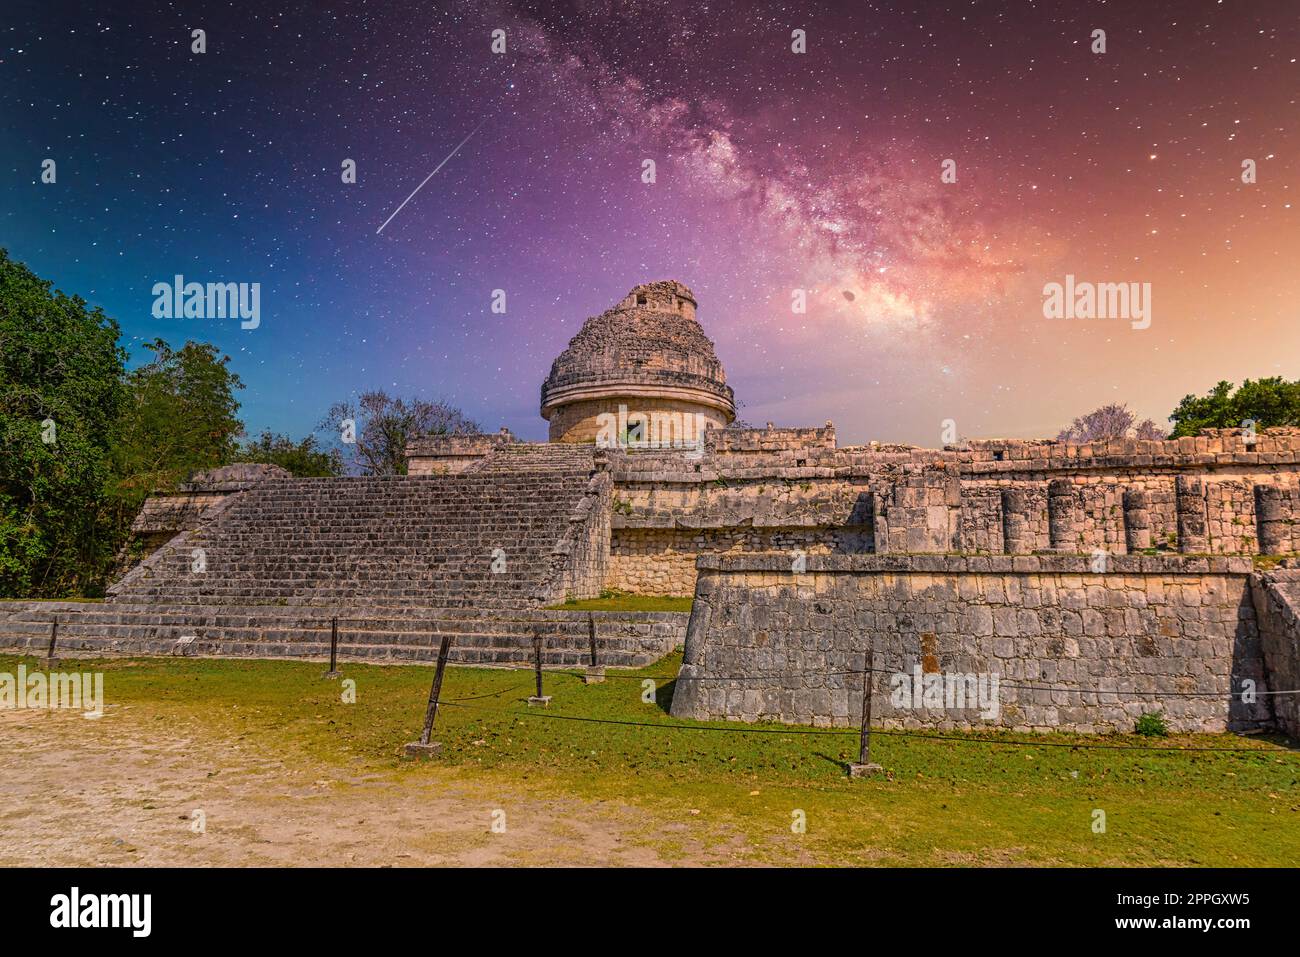 Ruines du temple de l'observatoire El Caracol, Chichen Itza, Yucatan, Mexique, civilisation Maya avec voie lactée ciel nocturne des étoiles de la Galaxie Banque D'Images